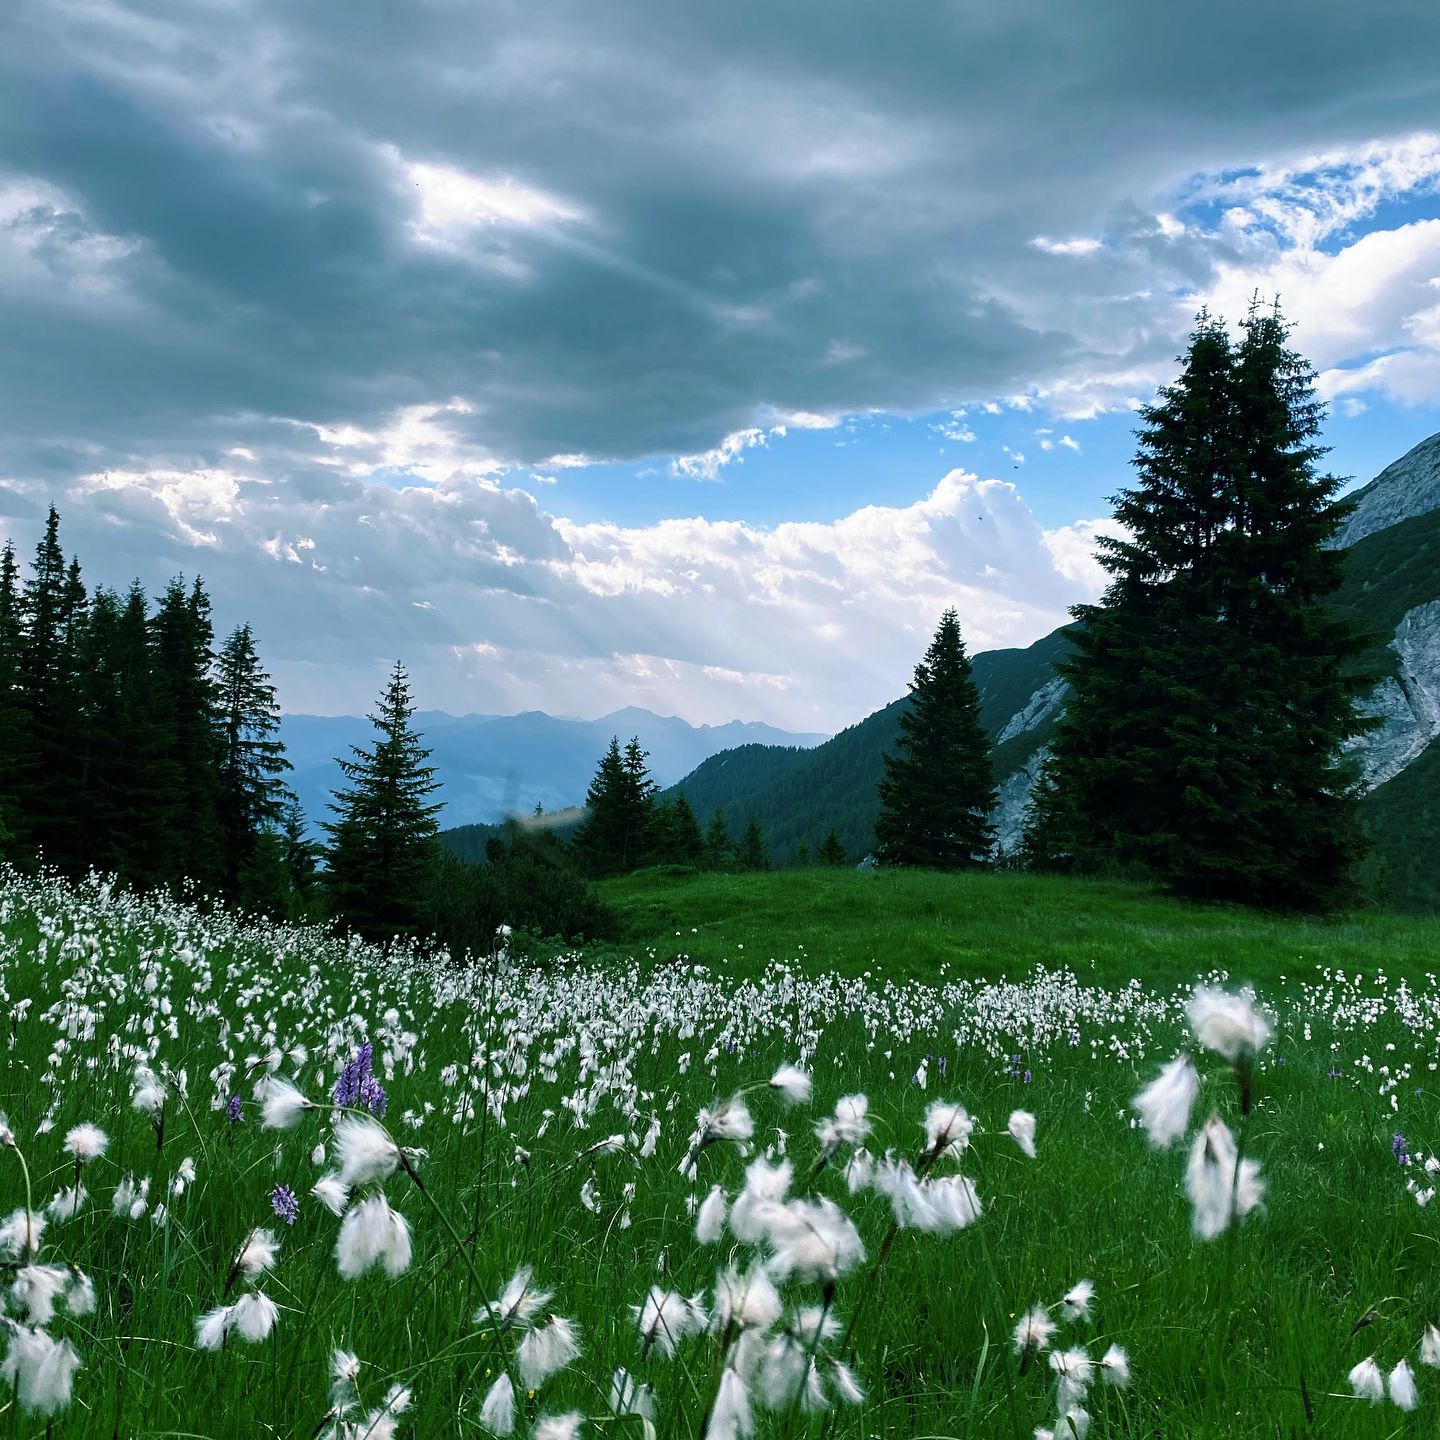 Manchmal braucht man nur die Natur, um den Kopf freizubekommen und die Seele baumeln zu lassen. 😮‍💨

Ein Schritt nach dem anderen durch die schönsten Landschaften Tirols. Unser Tipp: Eine Rundwanderung auf die Weissenbachalm bis zum Bärenkopf. 🏞️

#alpenperlenamachensee #weissenbachalm #bärenkopf #tipp #wandern #urlaubintirol